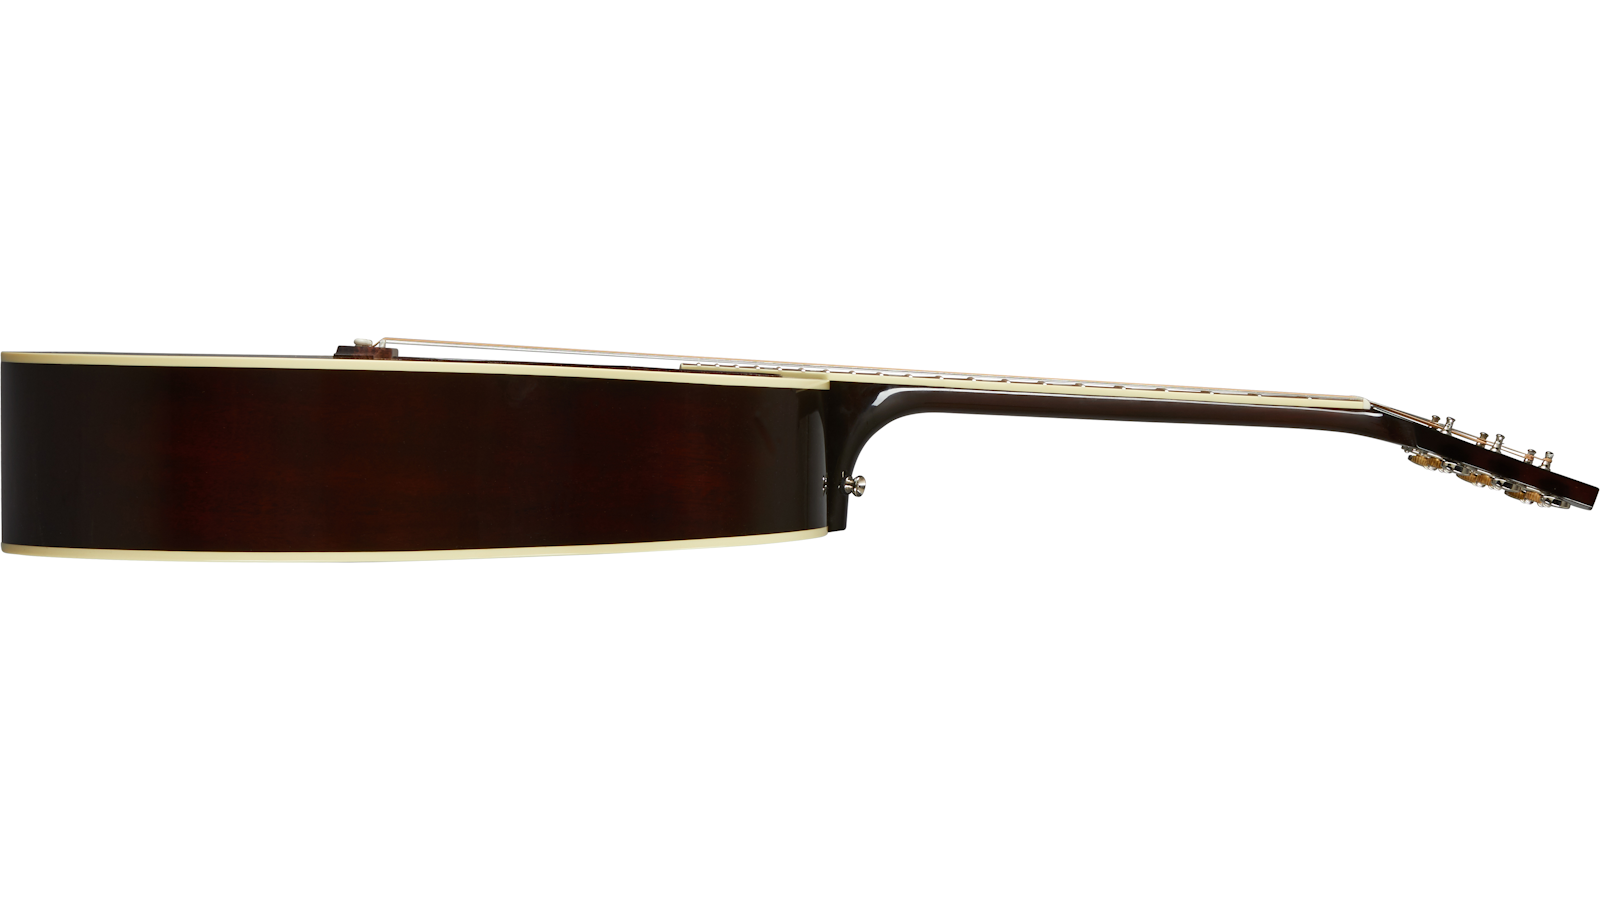 Gibson Southern Jumbo Original Dreanought Epicea Acajou Rw - Vintage Sunburst - Guitarra electro acustica - Variation 2